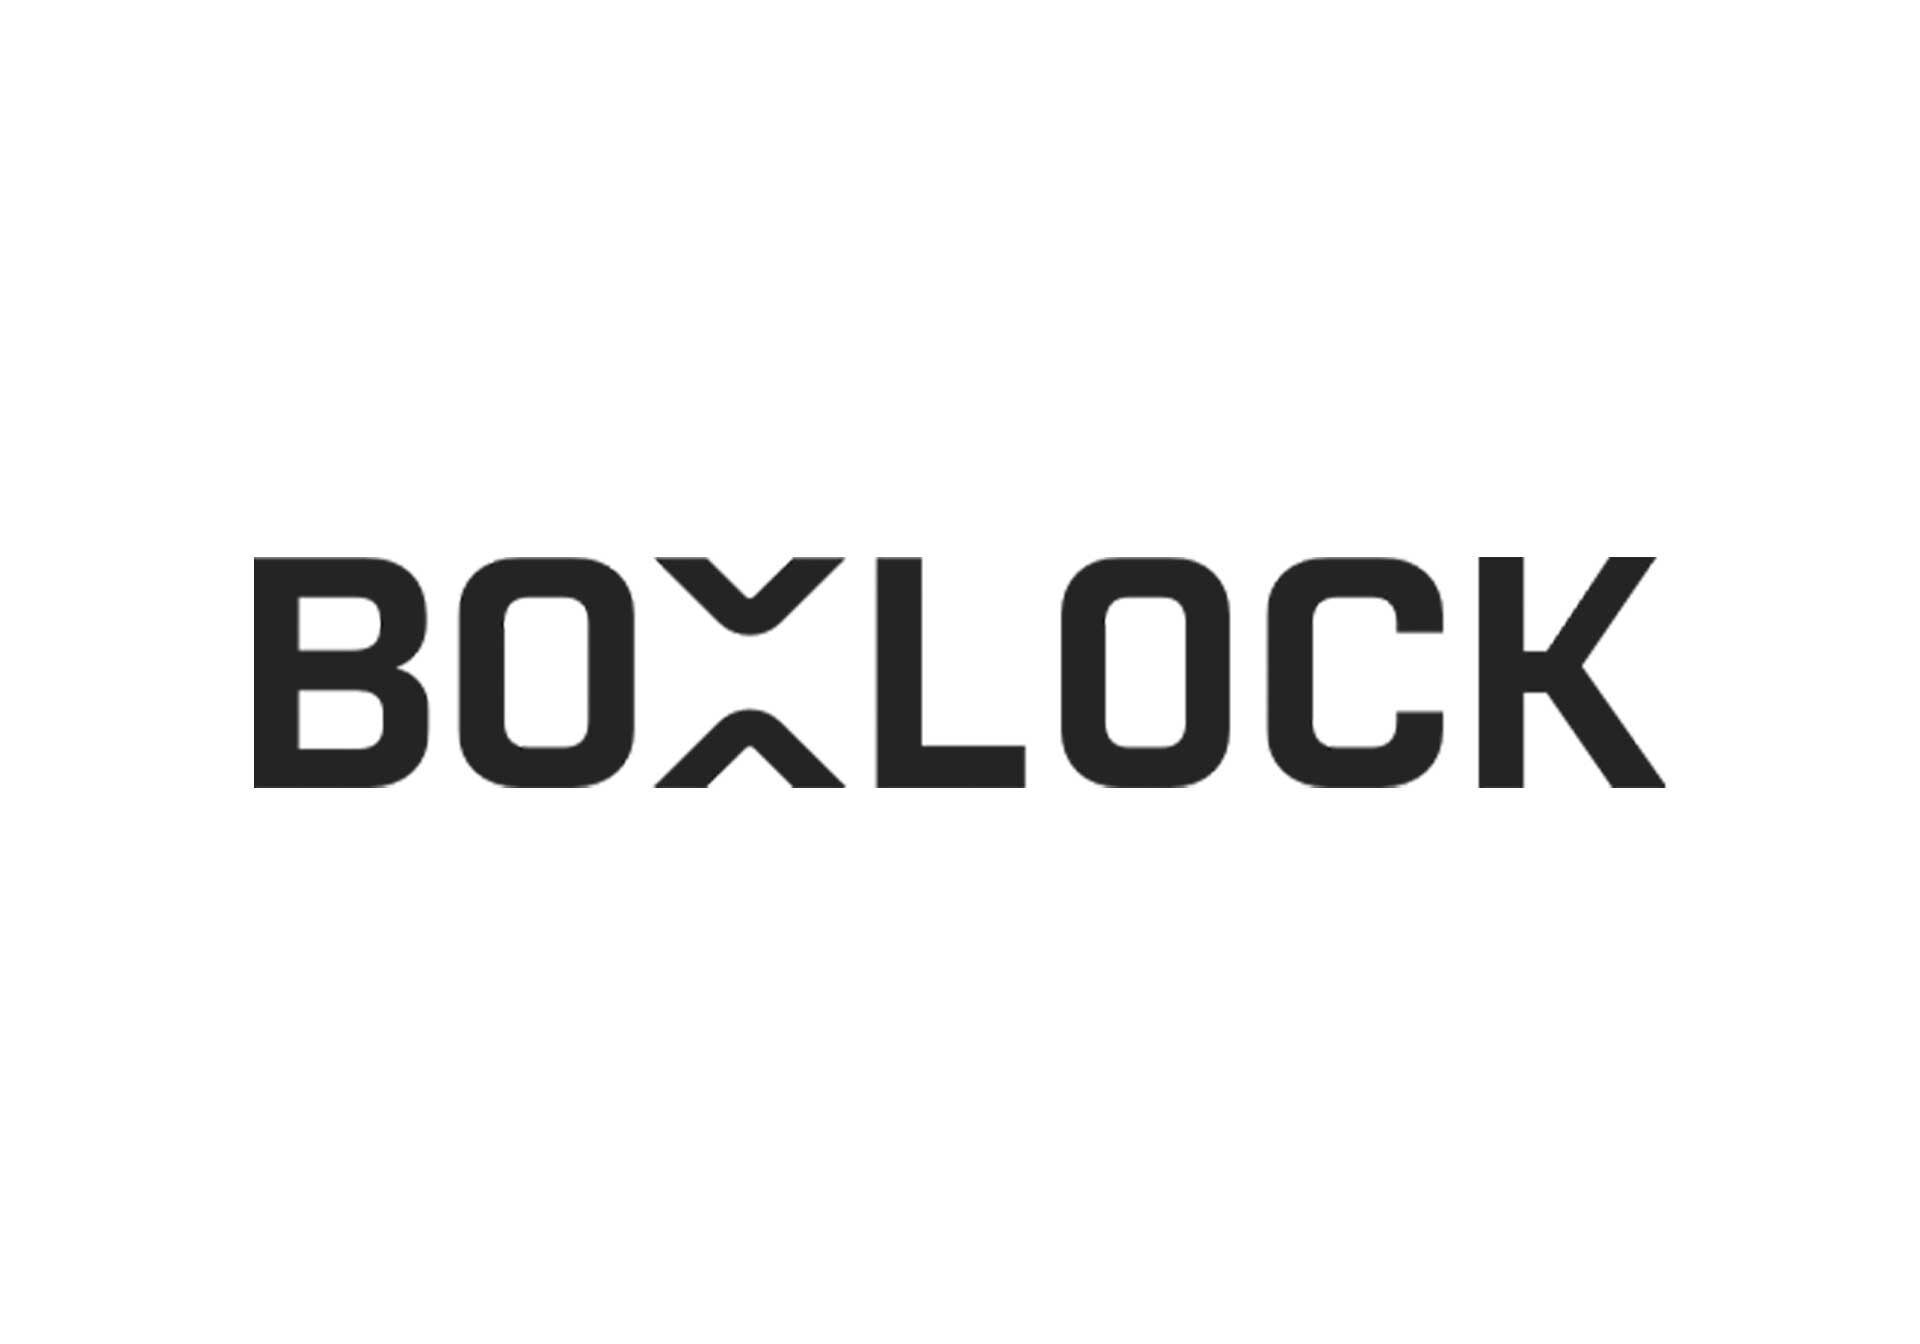 BoxLock